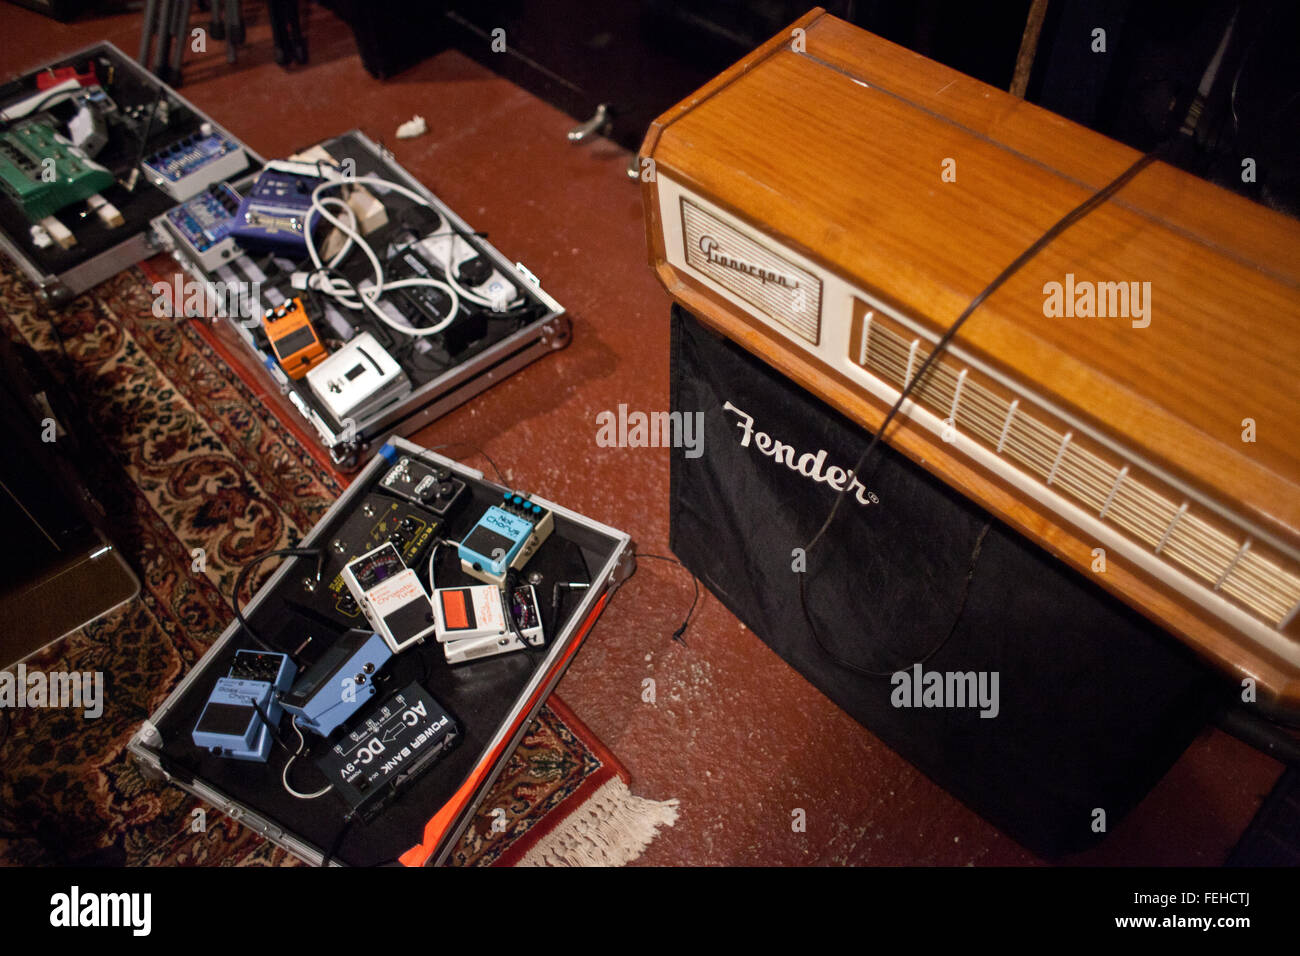 Dettaglio del parafango amp e tre schede del pedale all'interno di uno studio di registrazione. Foto Stock